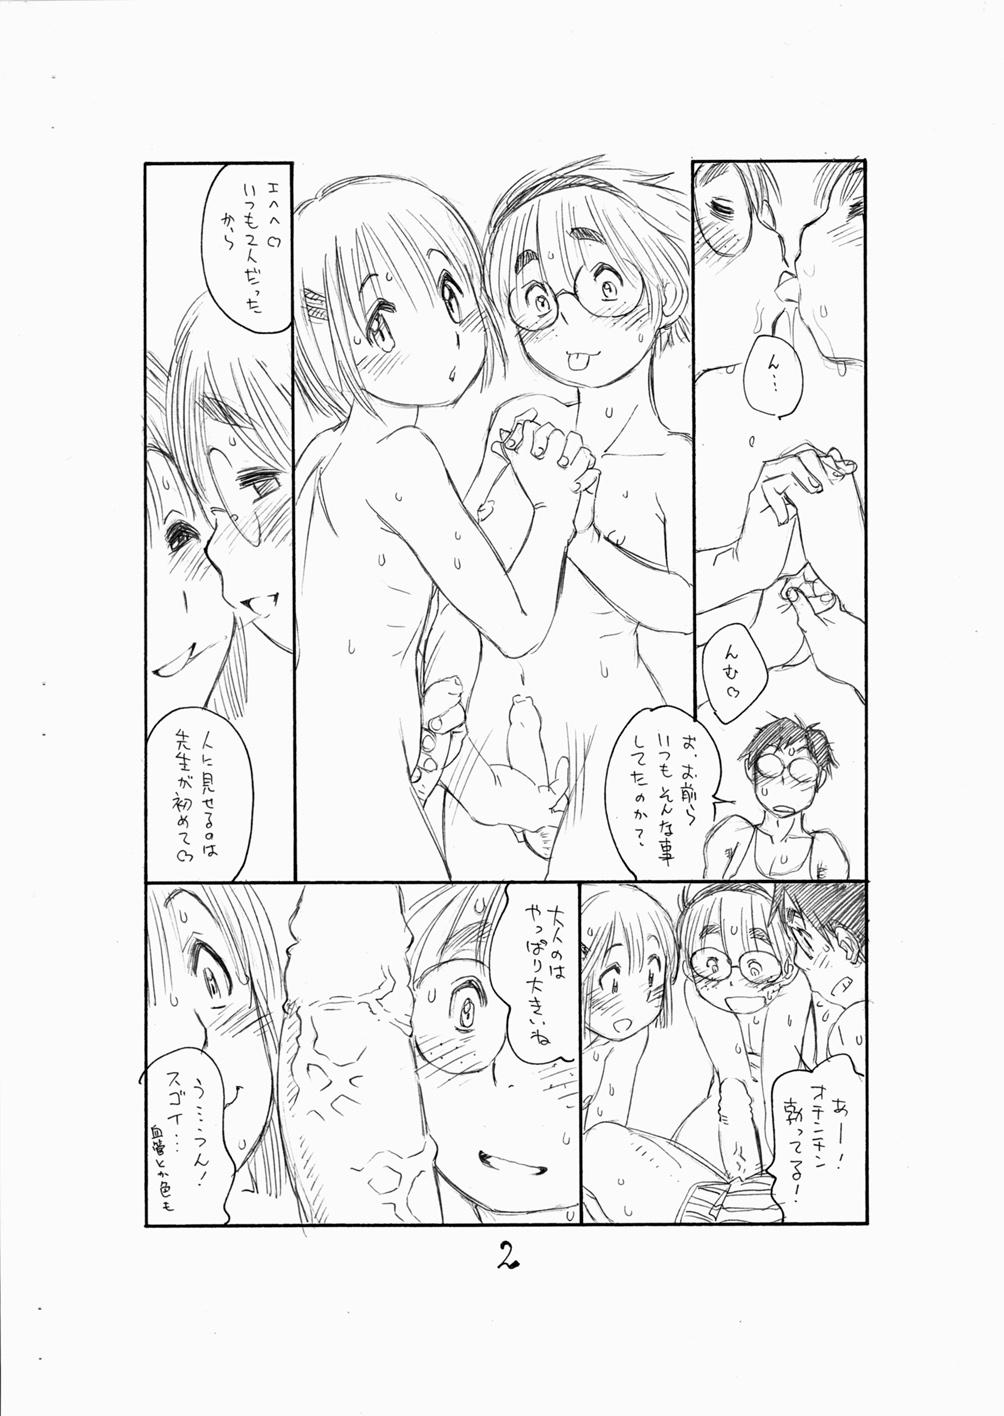 Blowing Bokutachi Otokonoko 3 - Hourou musuko Hardcore Porno - Page 4